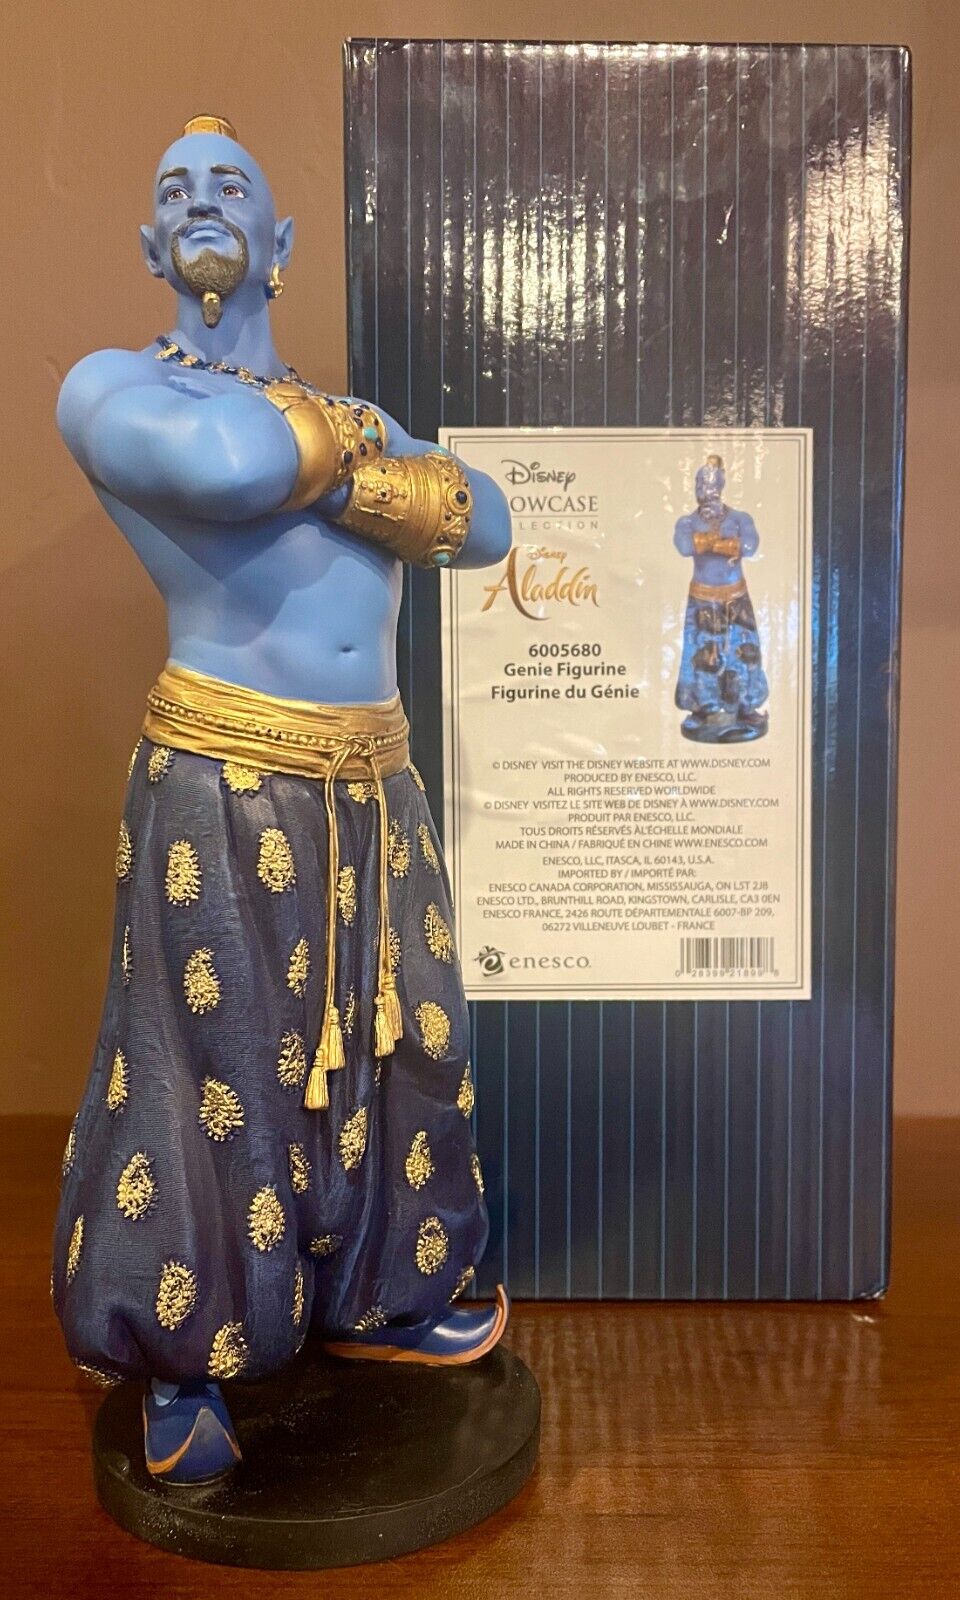 Disney Showcase Collection Aladdin Genie Figurine by Enesco 6005680 NIB